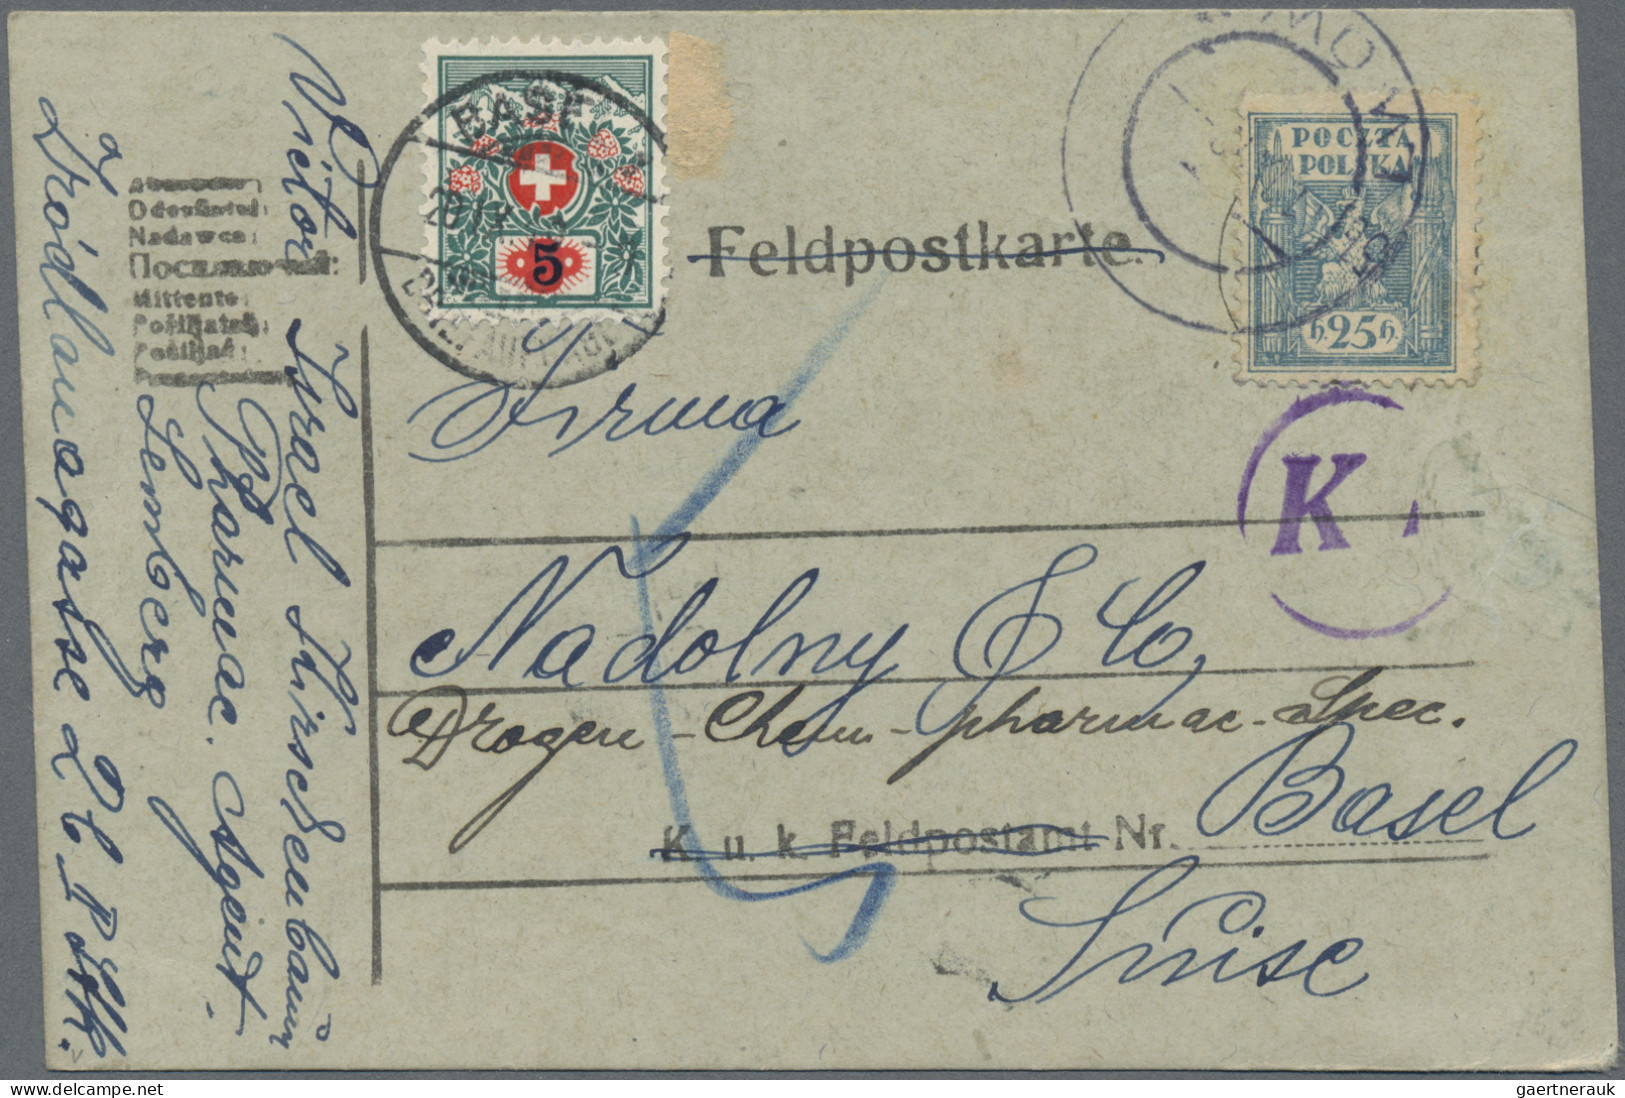 Schweiz - Portomarken: 1911/1924, Sammlung von 133 unzureichend frankierten Brie